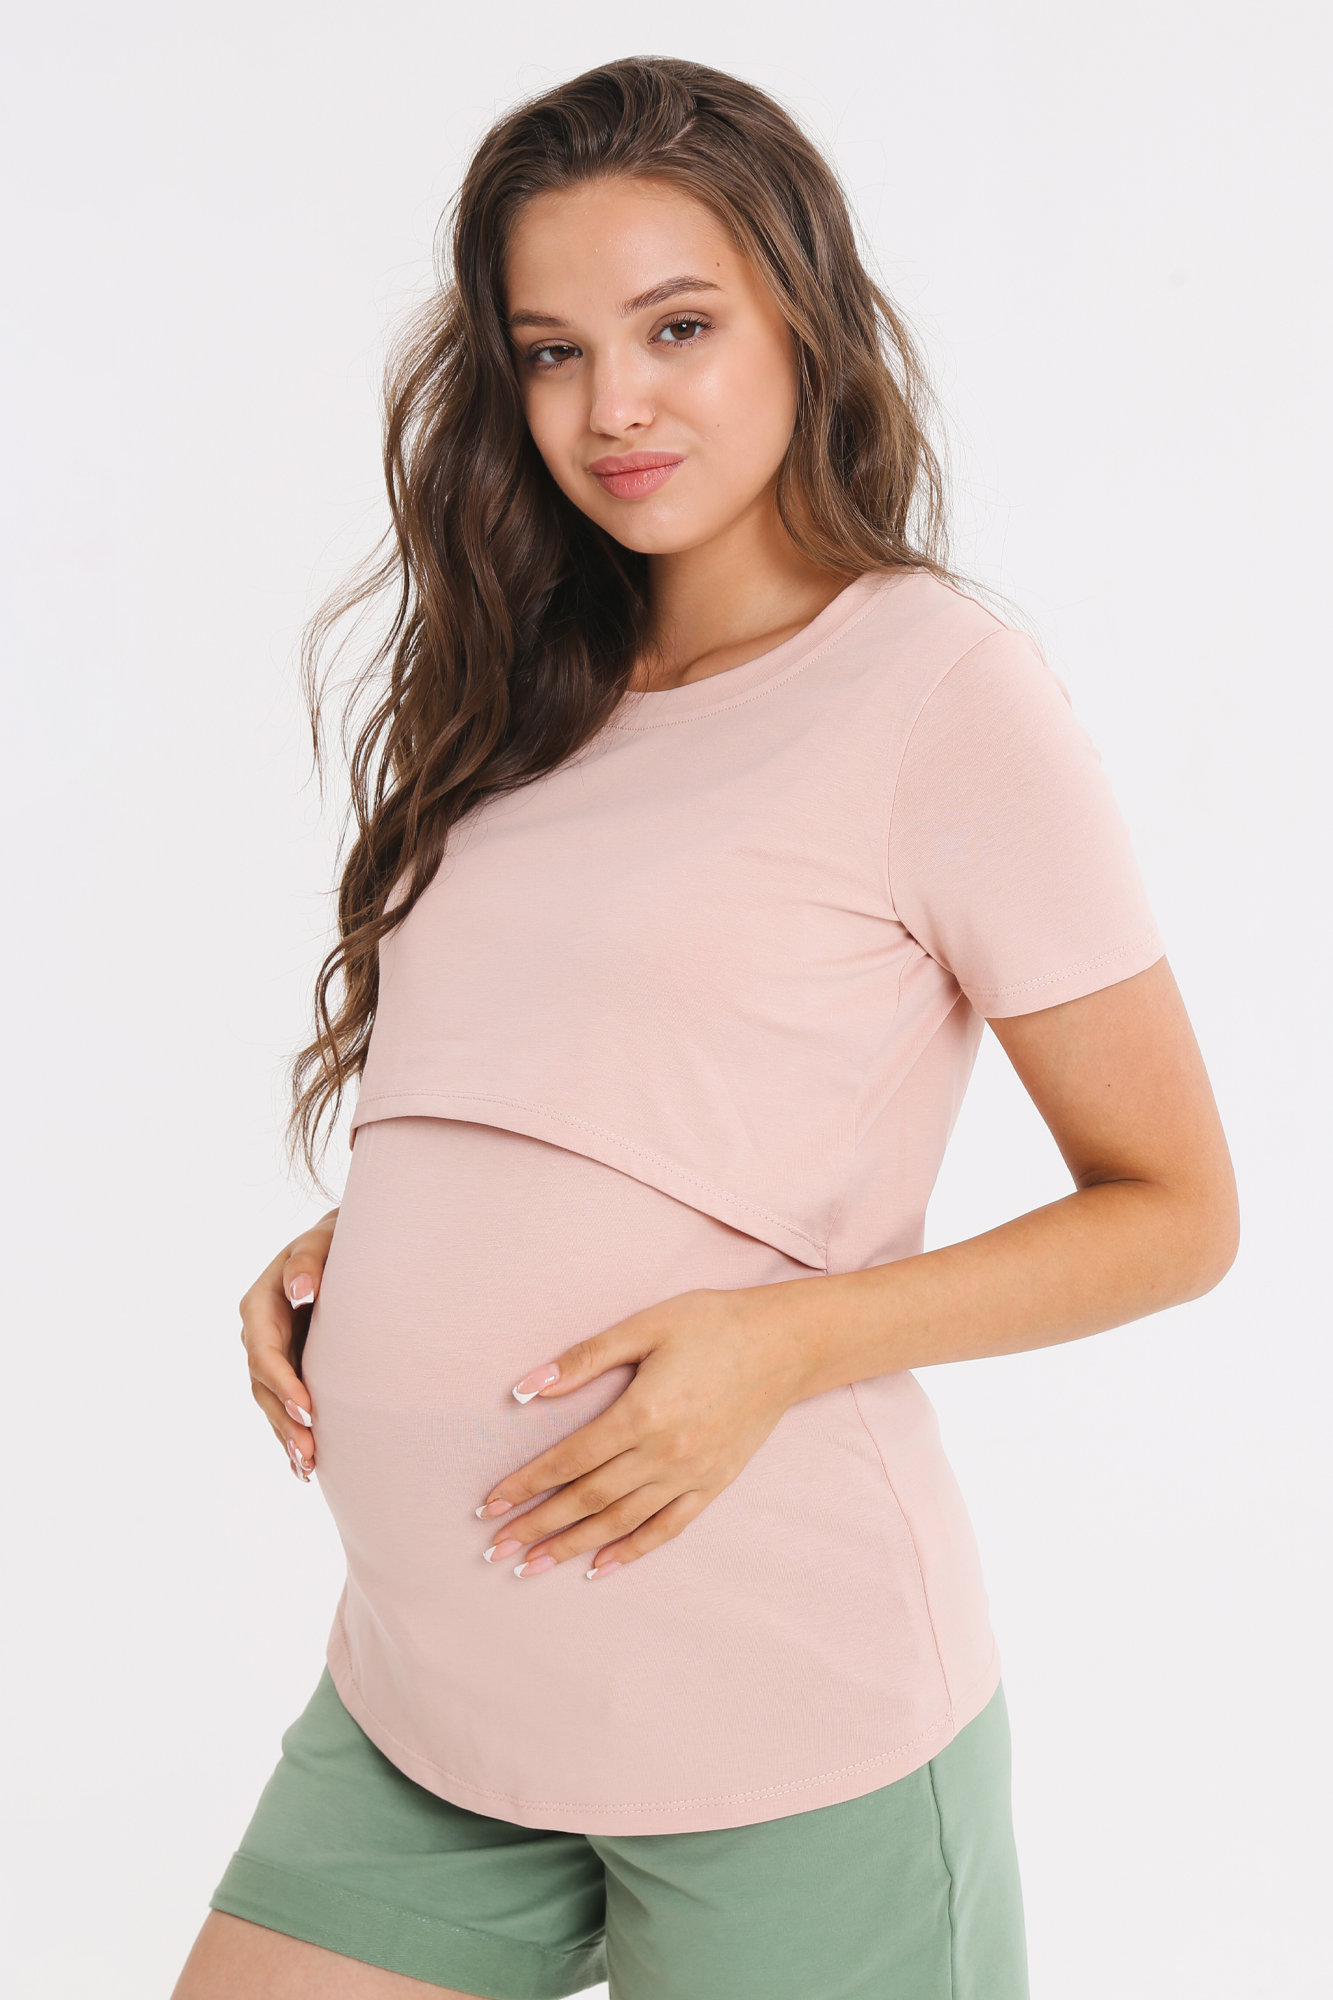 Футболка для беременных женская Magica bellezza МВ7006 розовая 48